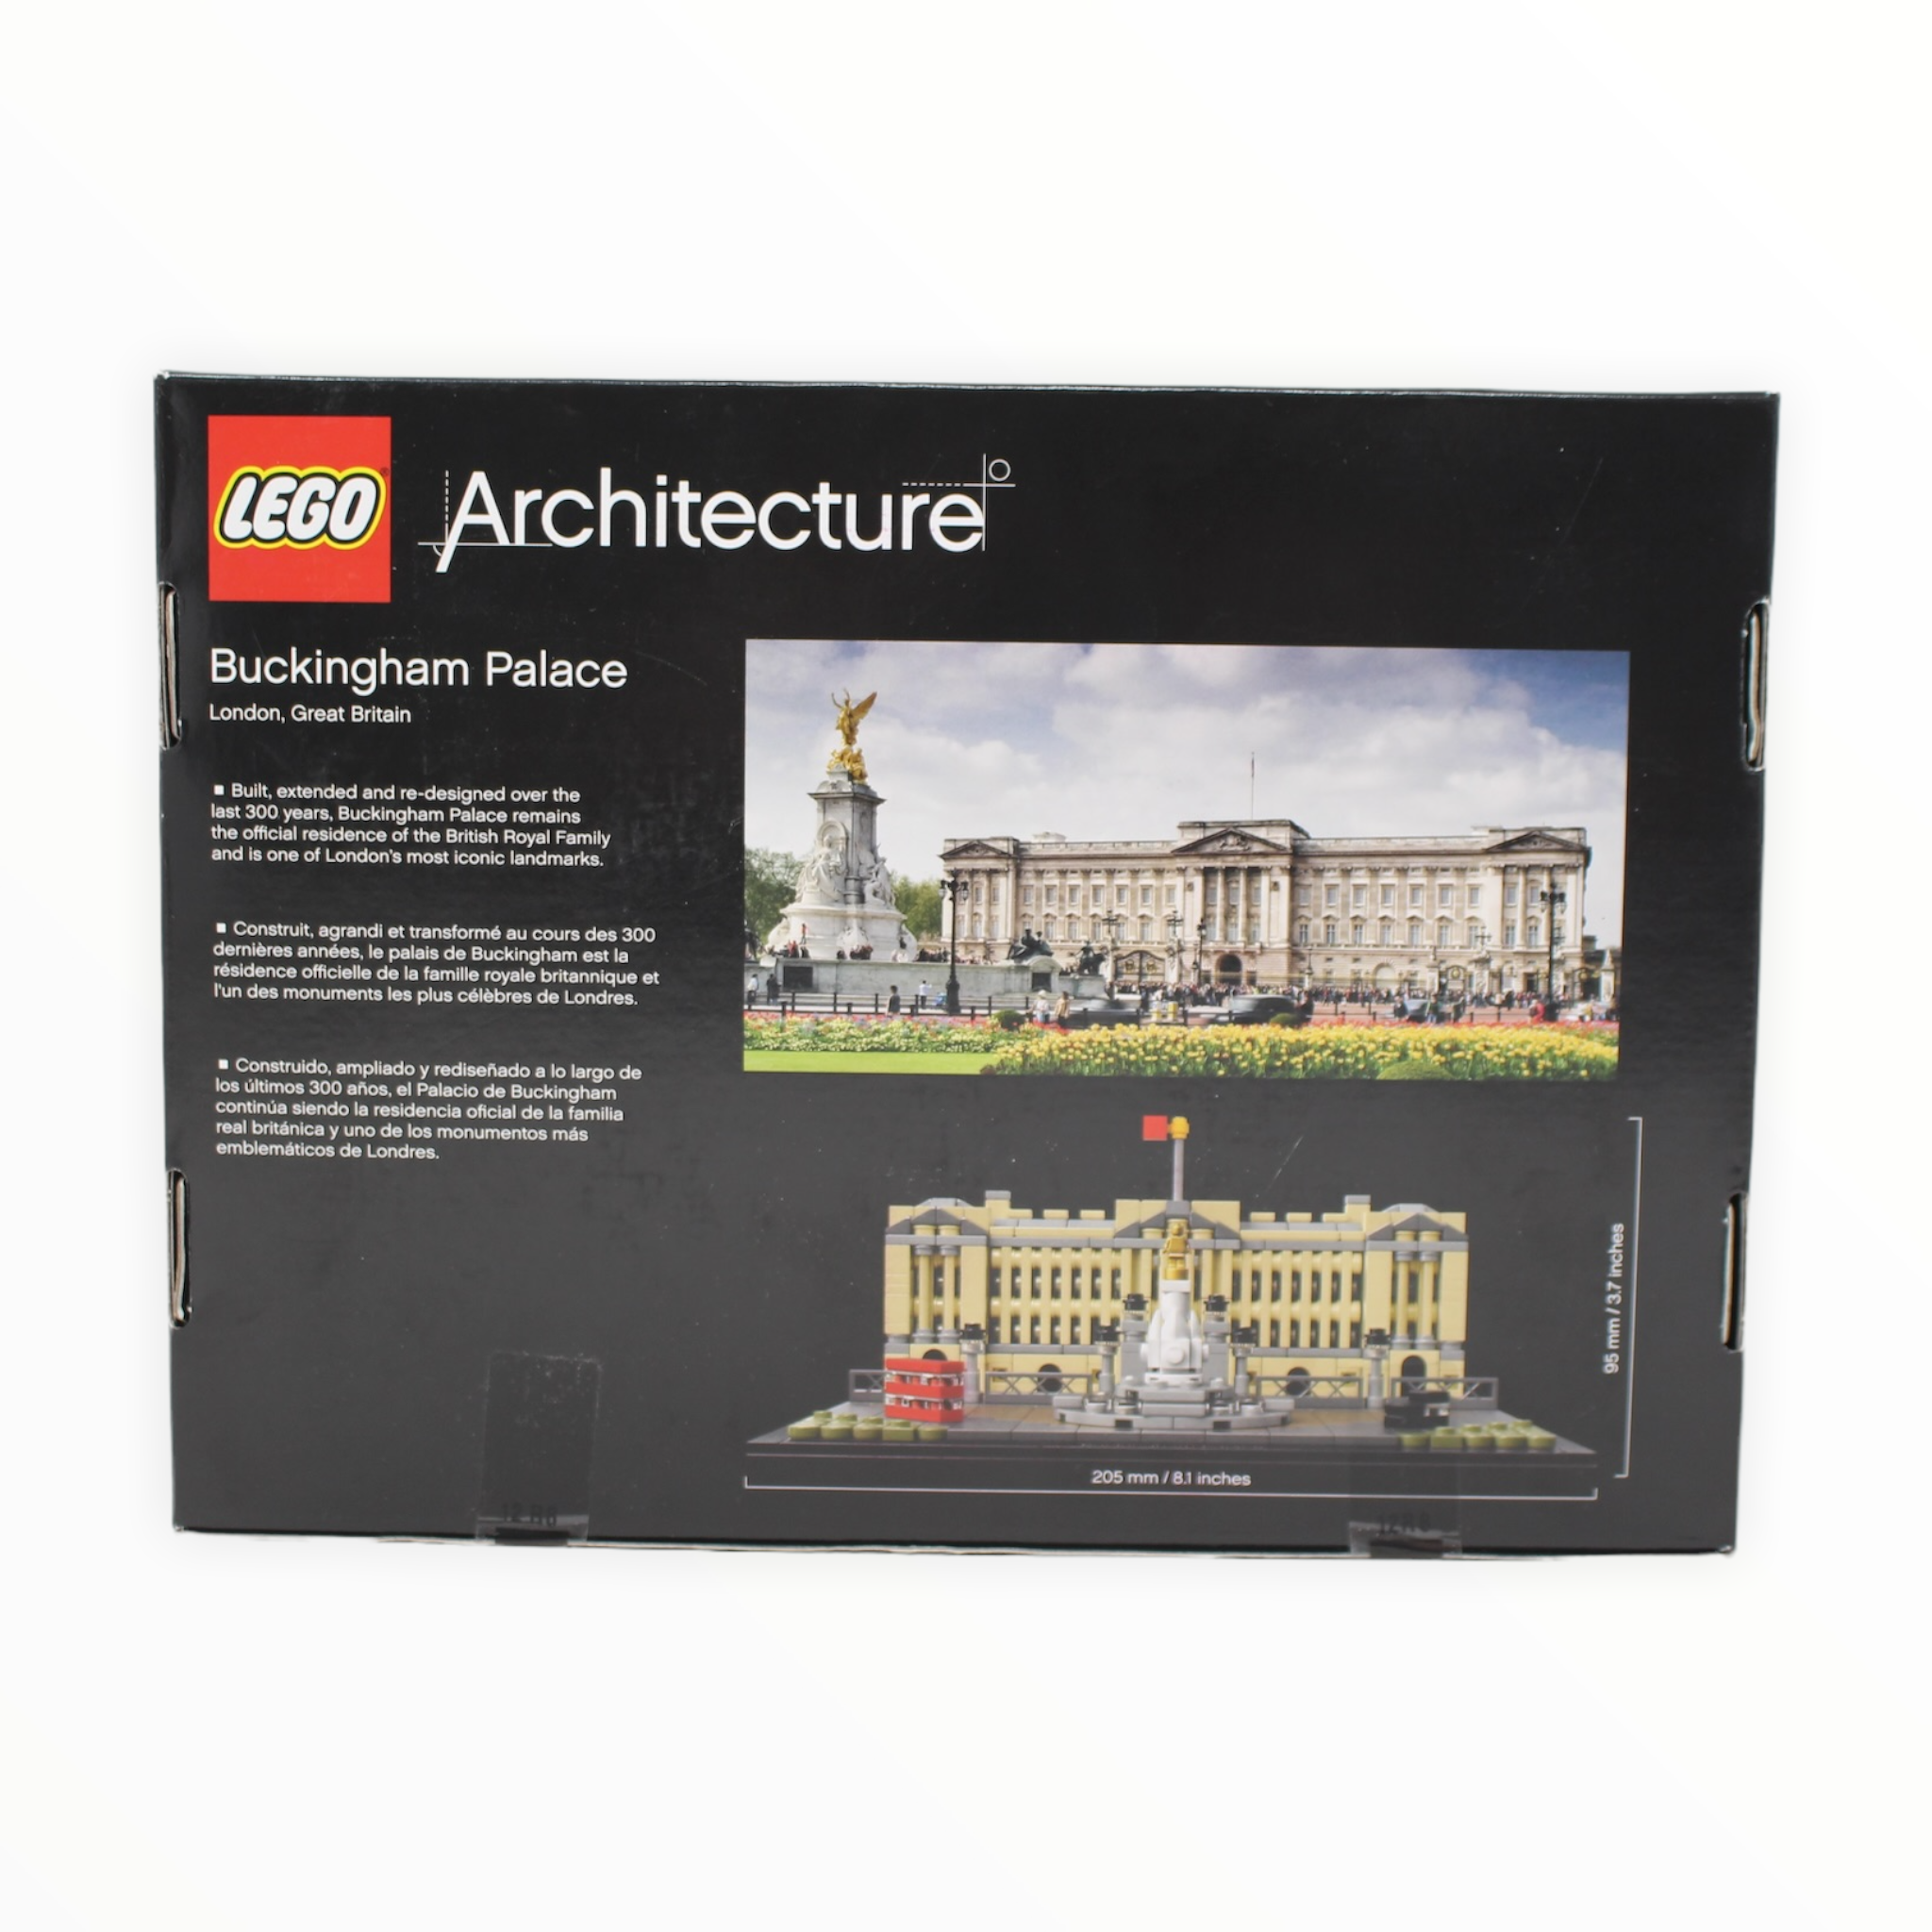 Retired Set 21029 Architecture Buckingham Palace